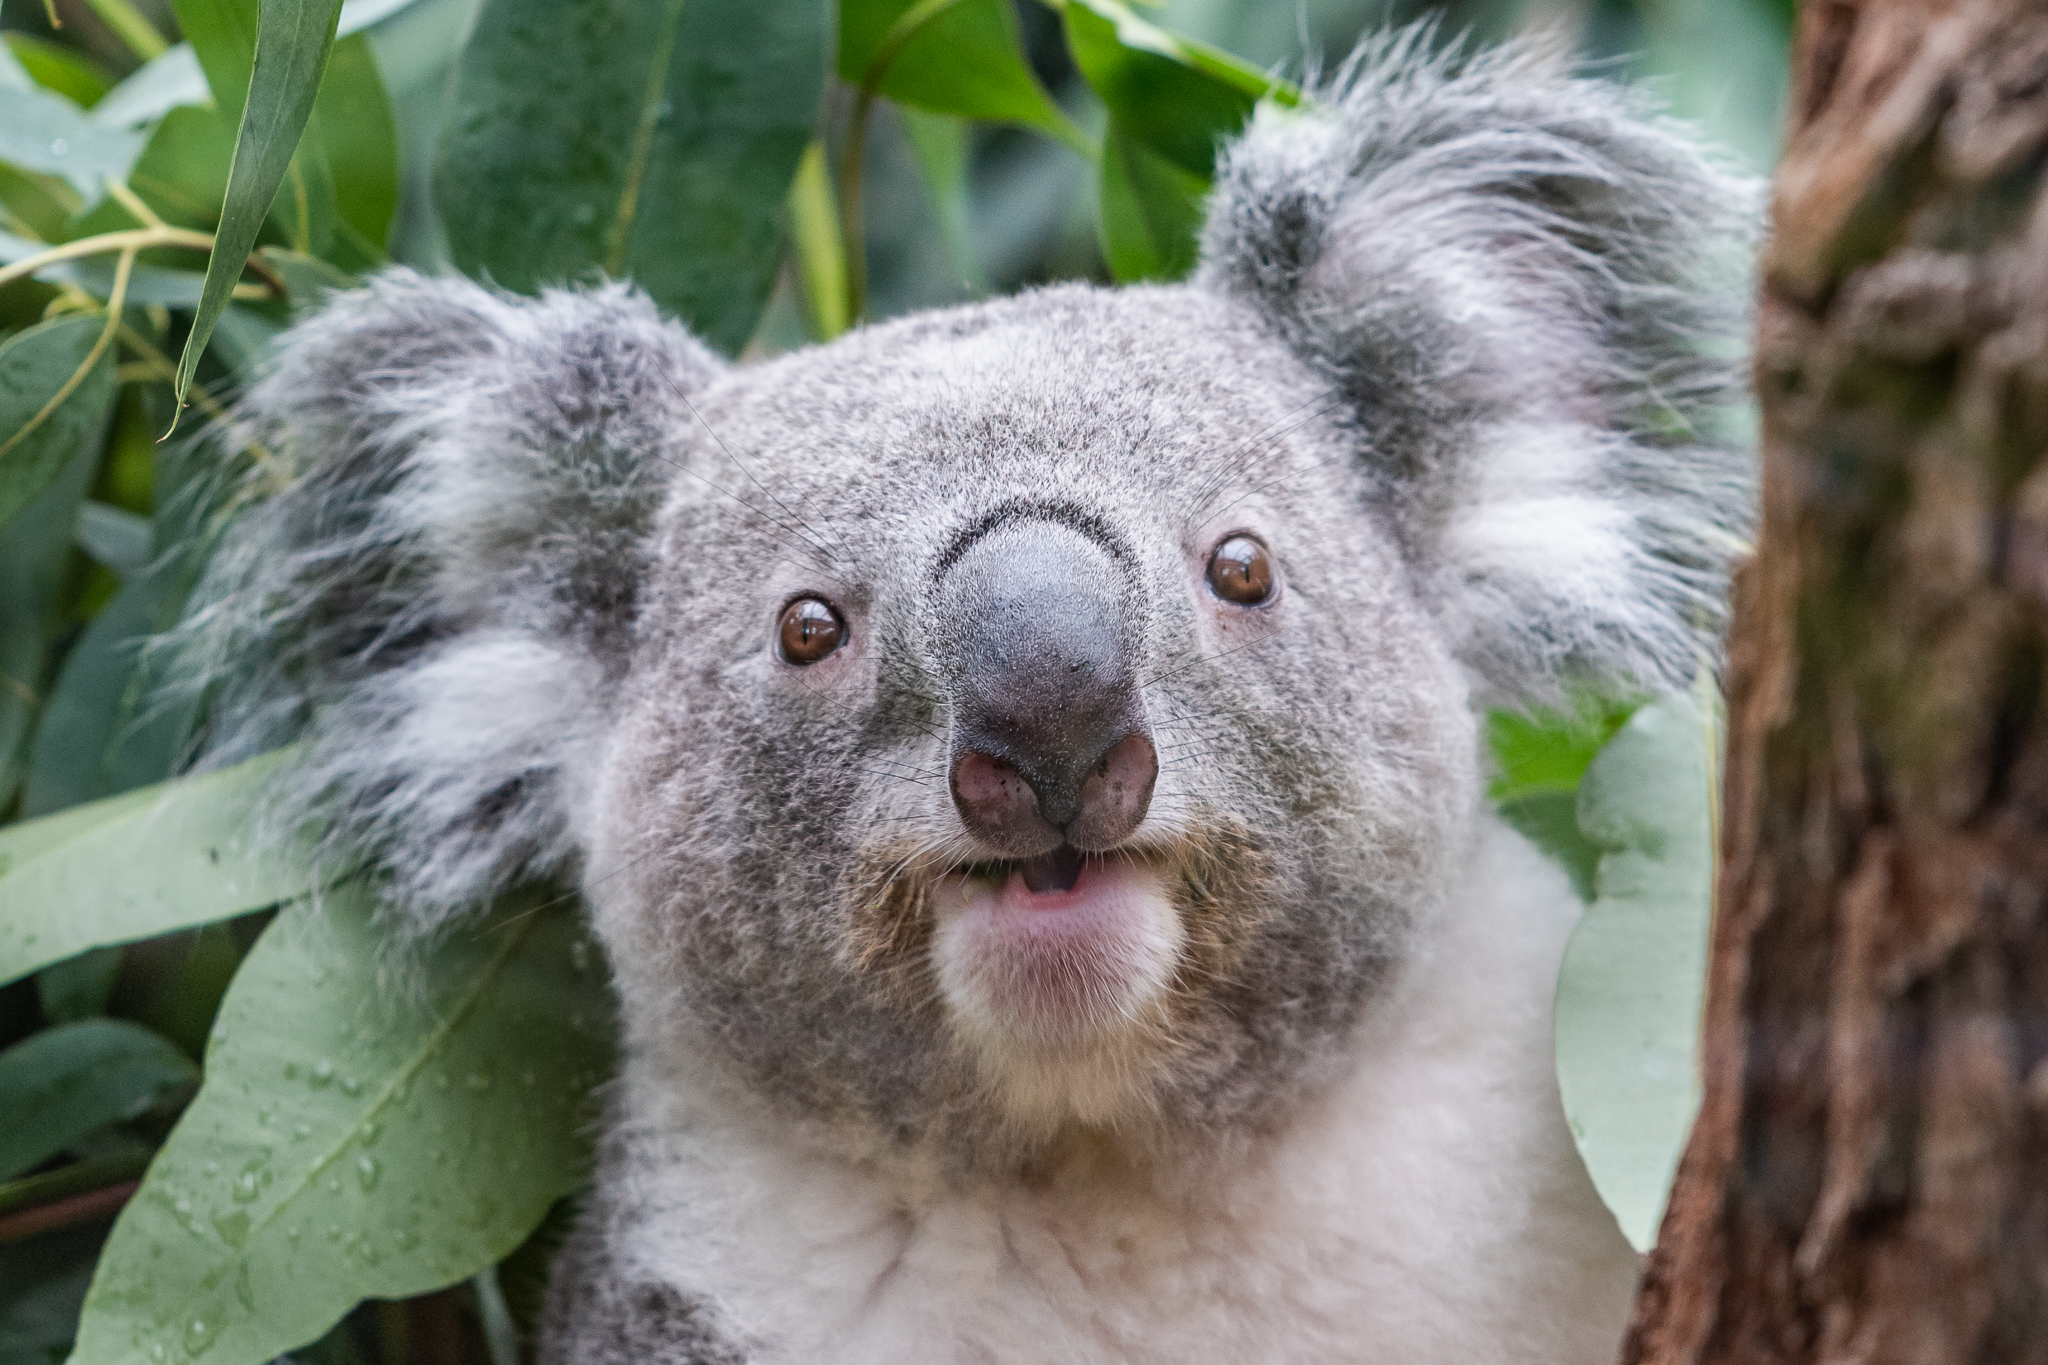 Koala

#sony #sonya7riii #ilce7rm3 #sonyphotography #tamron70200mm #photooftheday #nature #naturephotography #zoofotografie #animals #zooanimalsofinstagram #tierpark #zoo #animalphotography #zooanimal #zoopark #zoophoto #fotografie #zooduisburg #duisburg #tierfotografie #naturliebe #tierliebe #einhesseunterwegs #kurztrip #koala